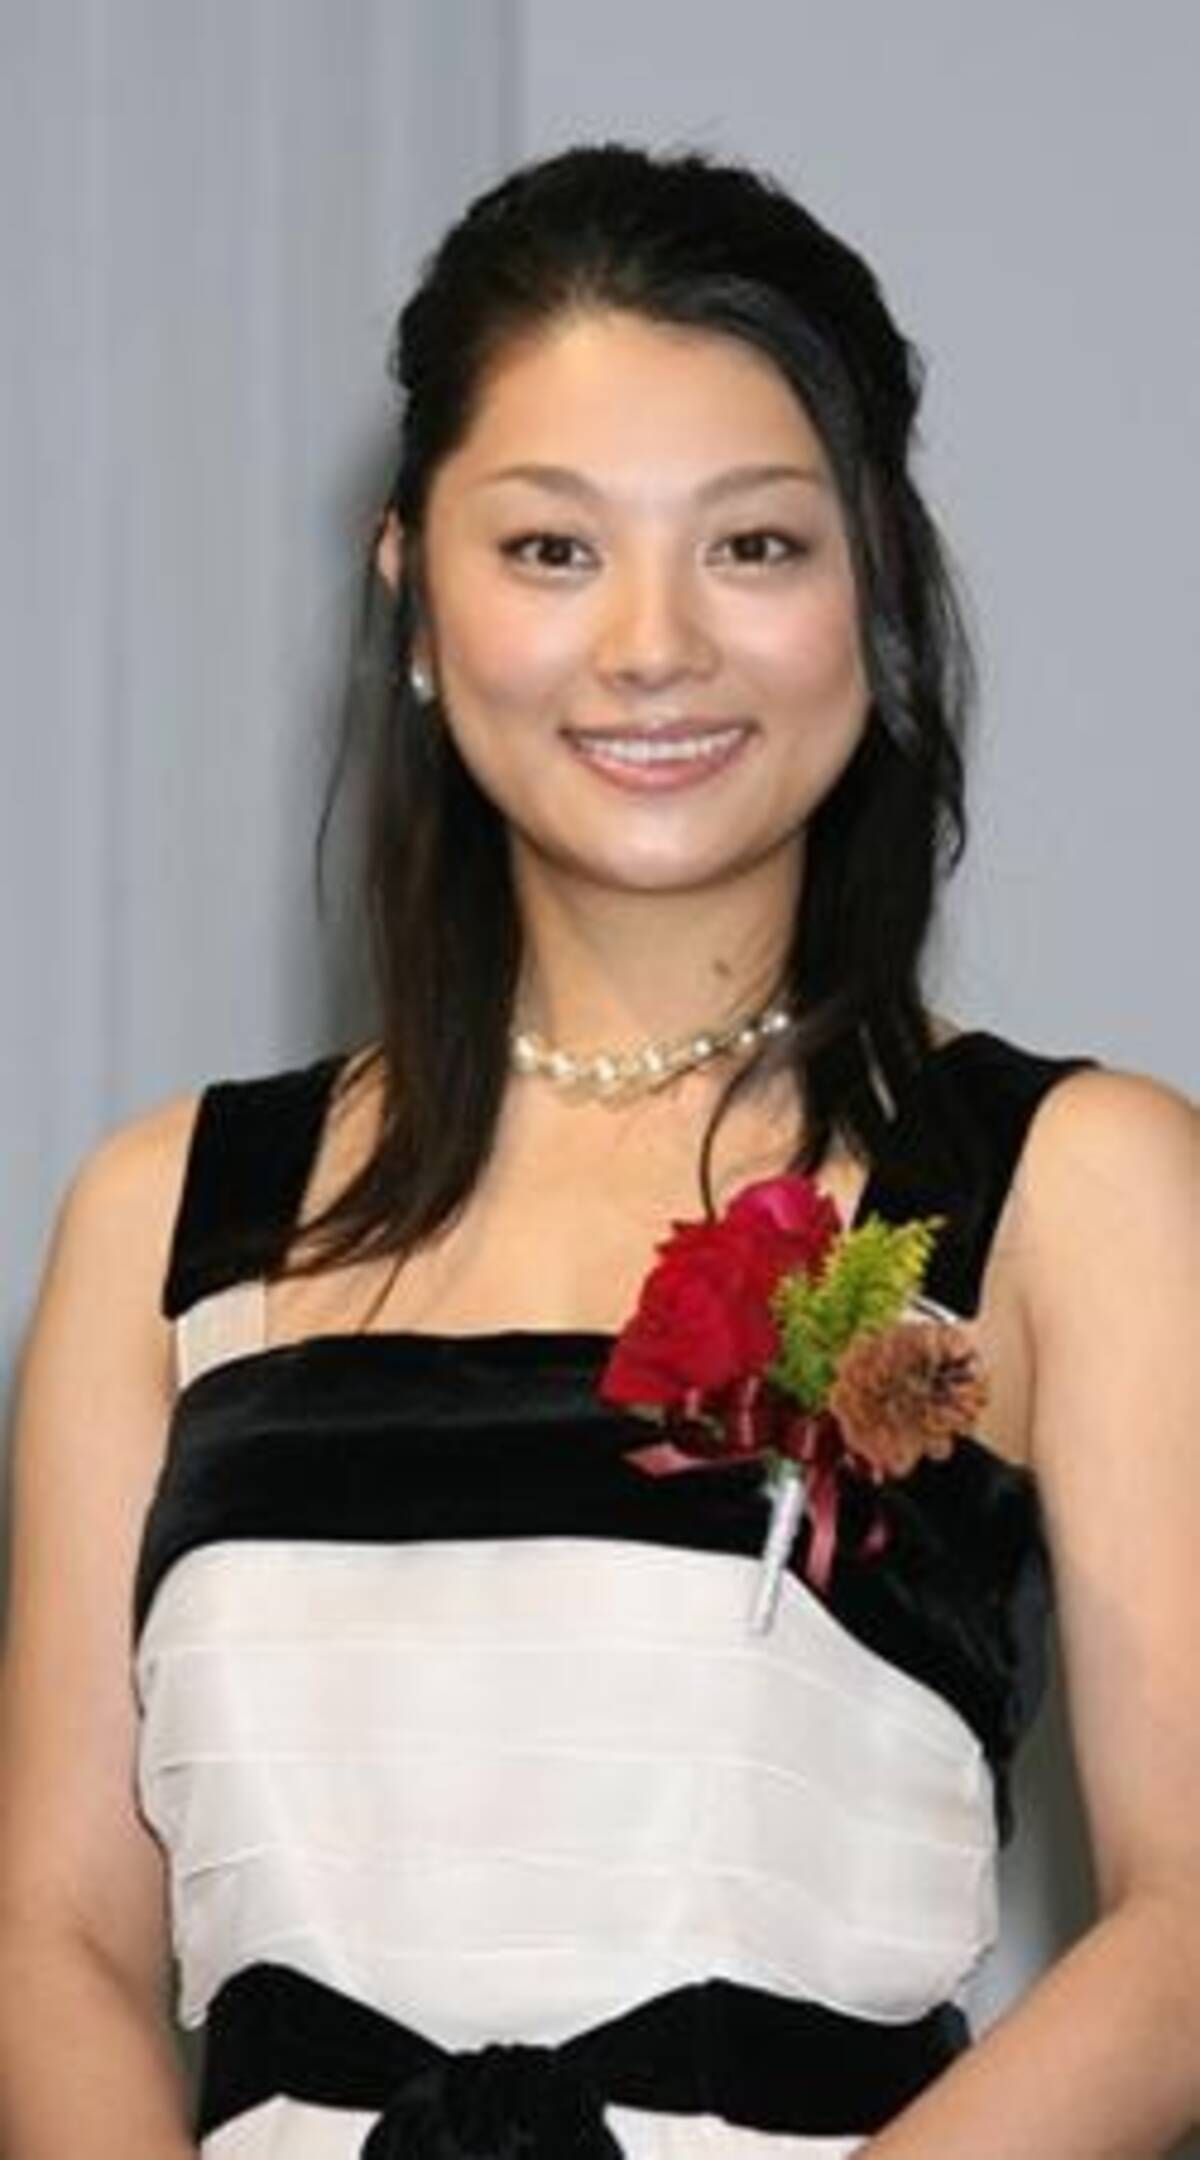 共演ng 犬猿の仲 の有名人 小池栄子を拒否した釈由美子 皮肉にも立場逆転 18年7月1日 エキサイトニュース